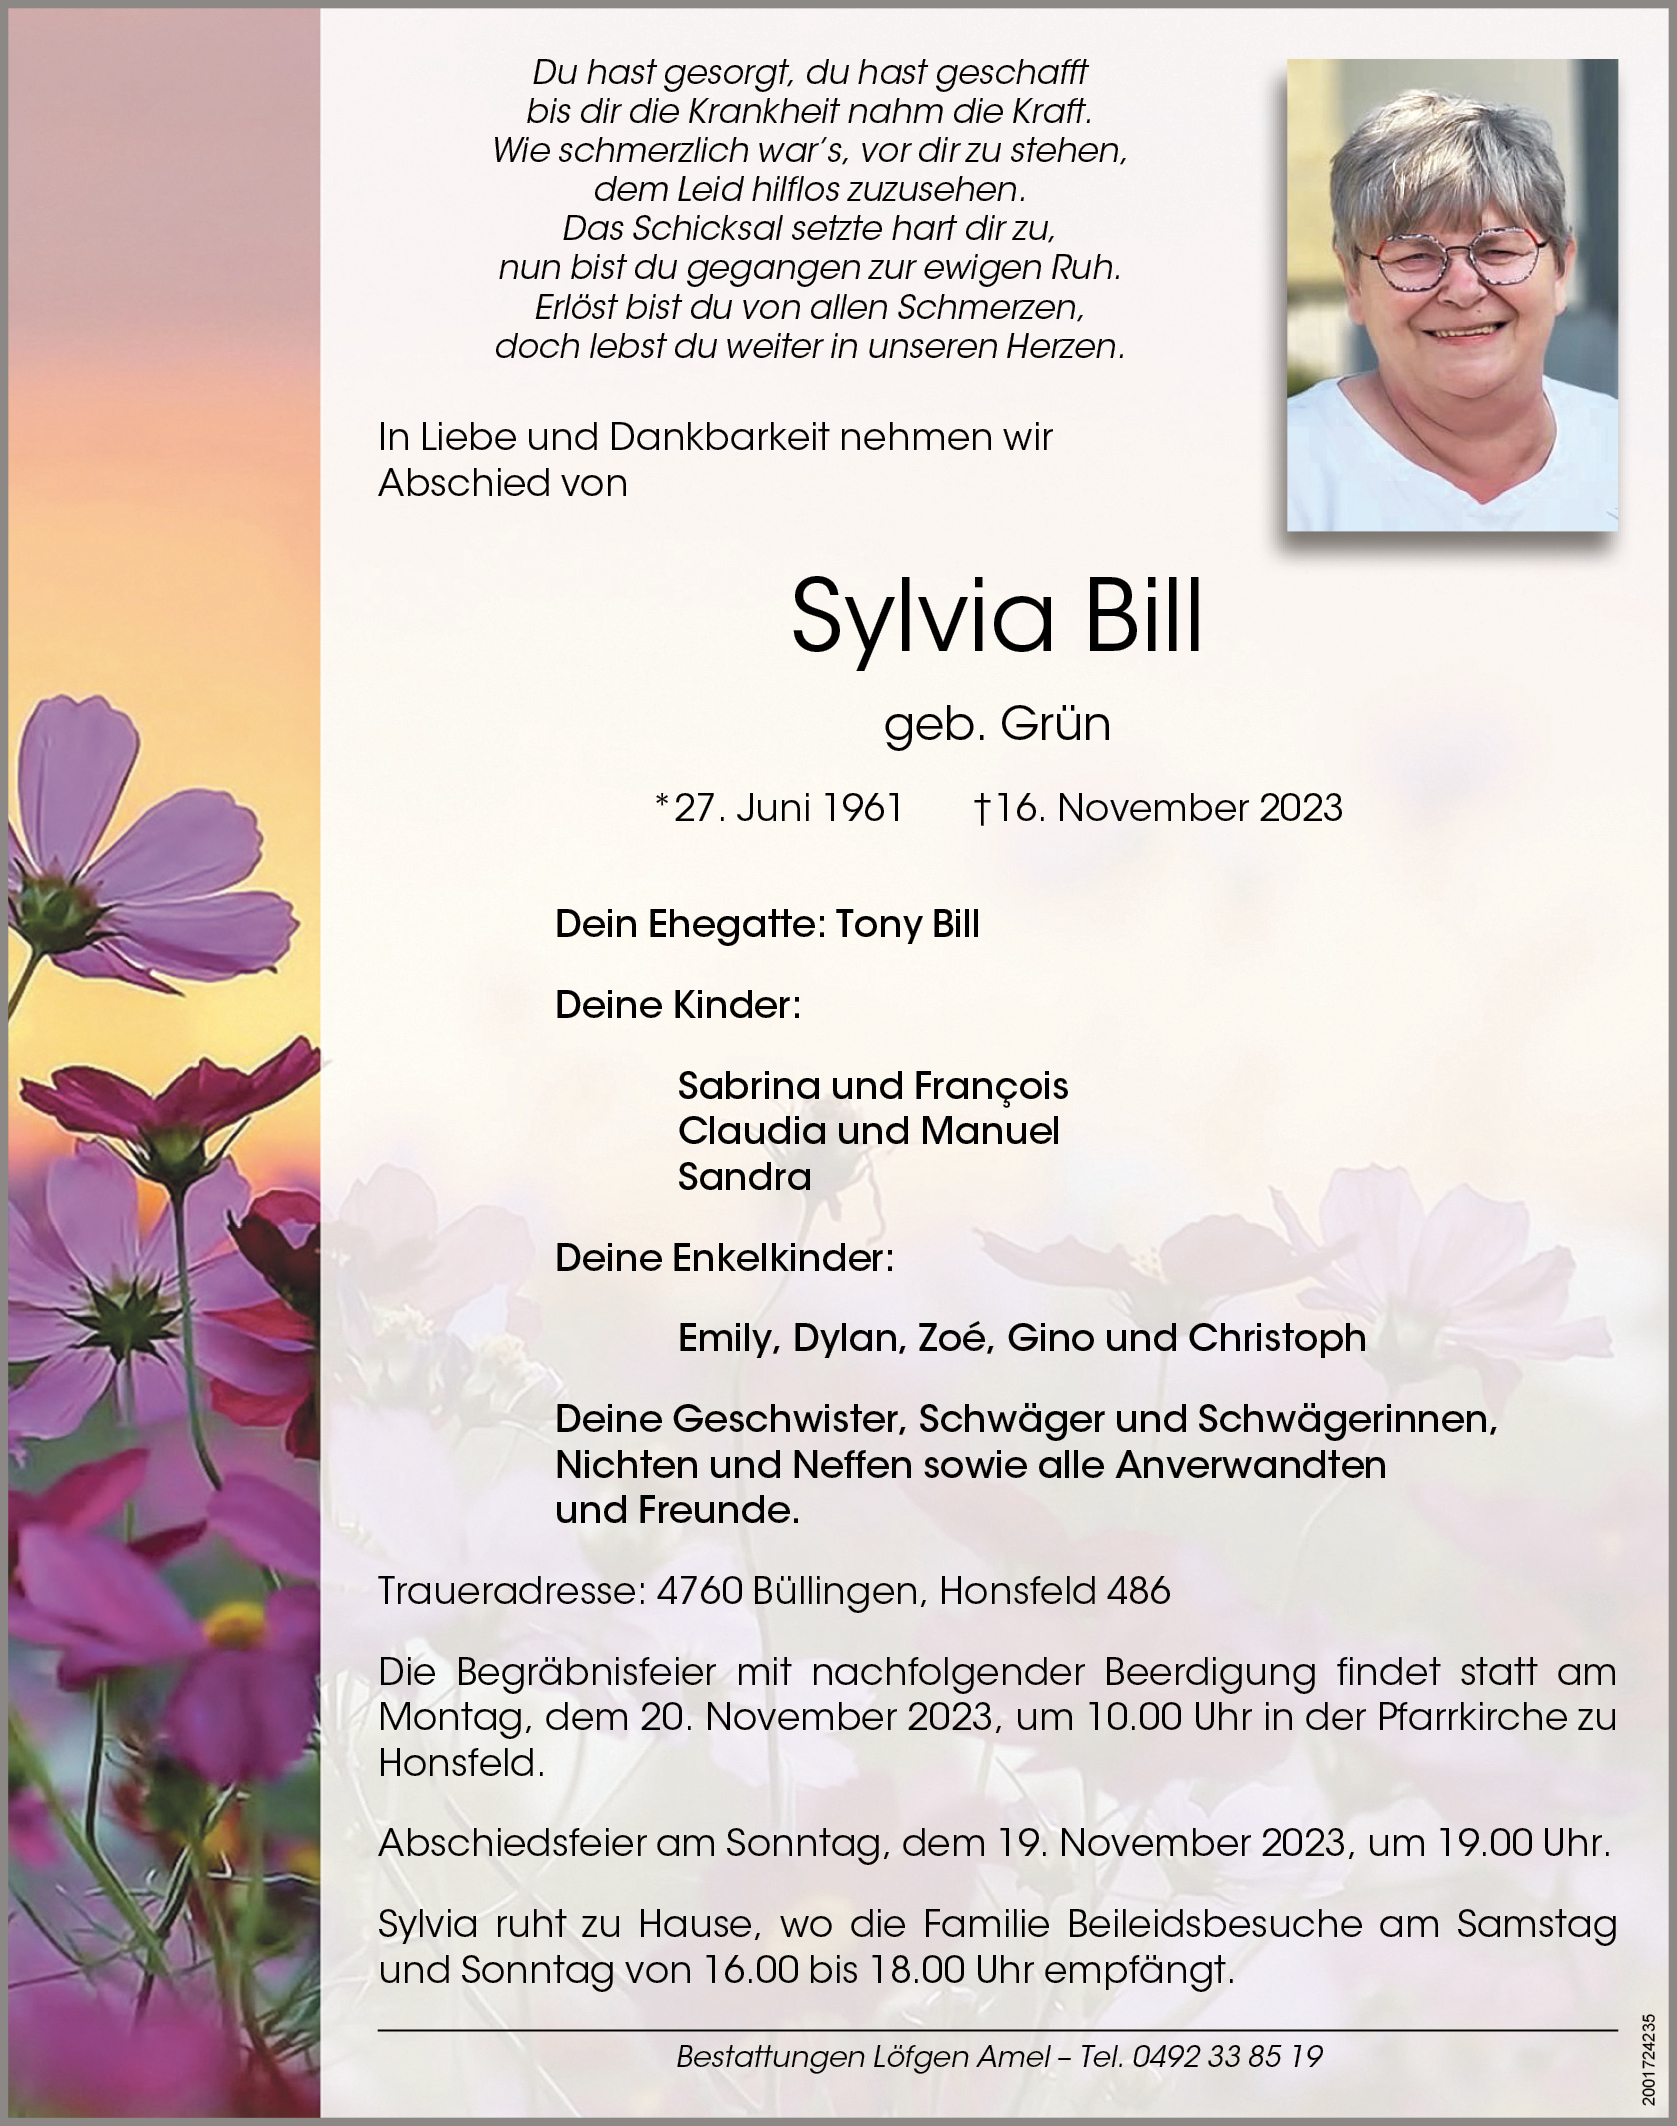 Sylvia Bill